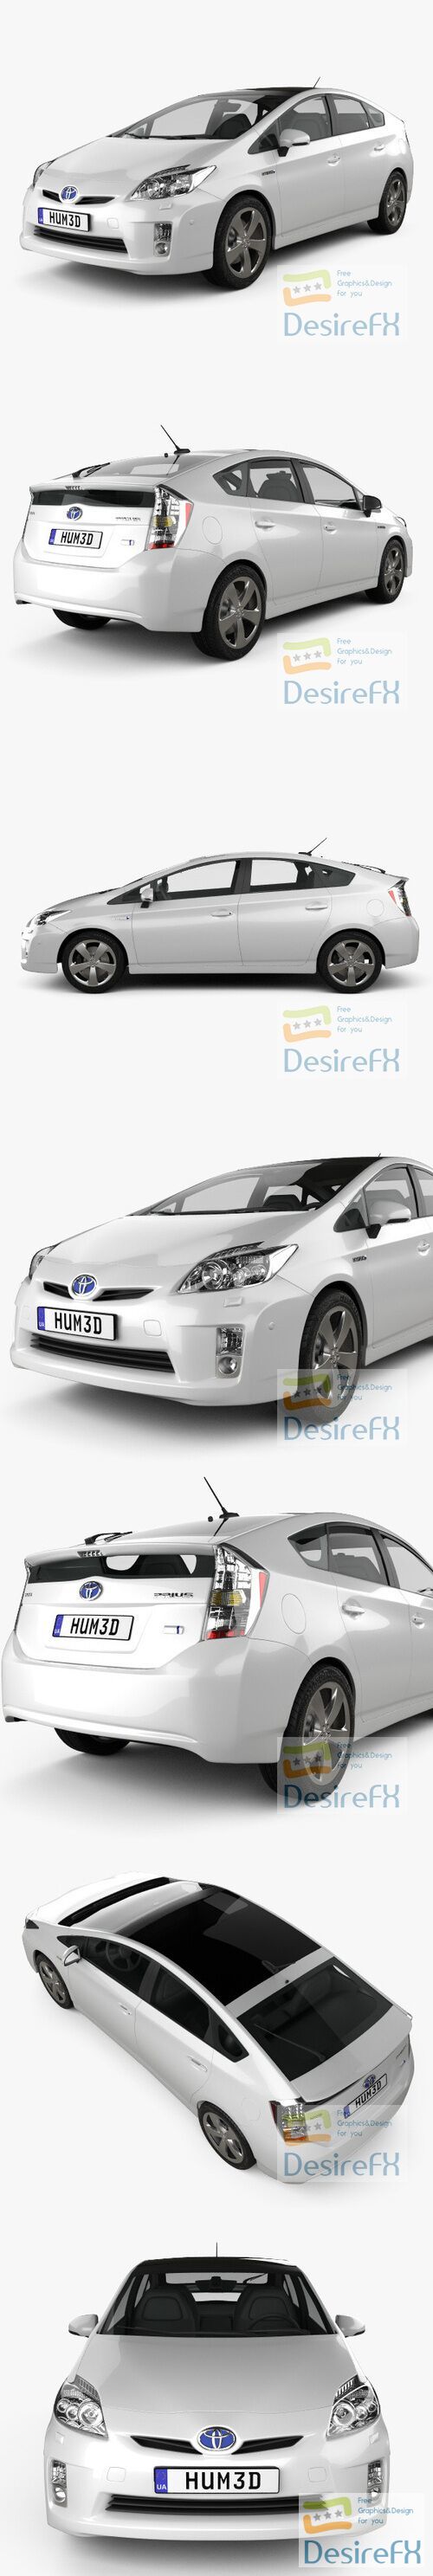 Toyota Prius 2010 3D Model